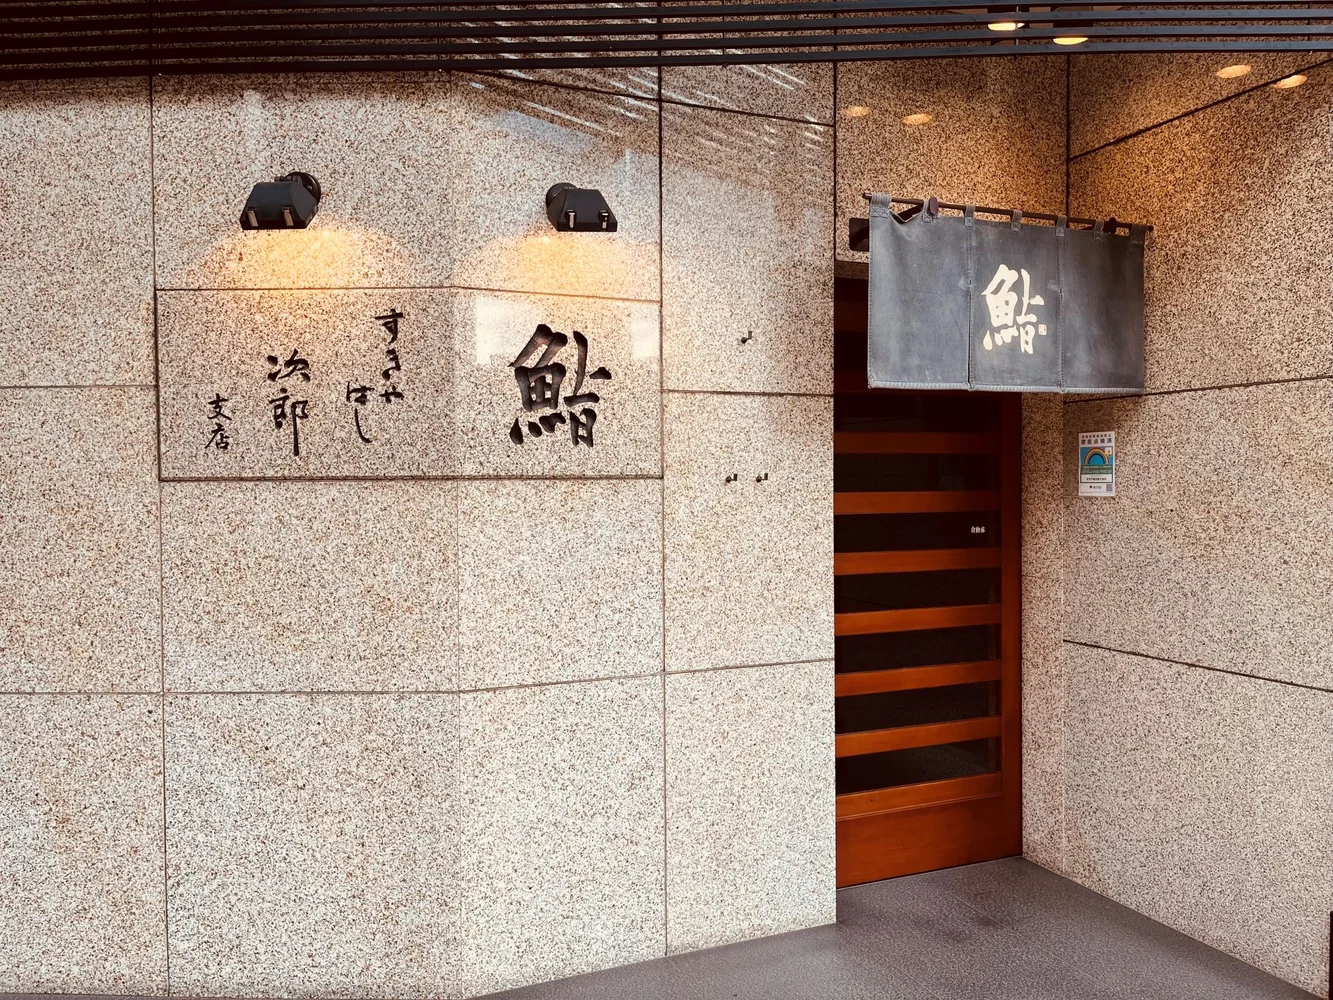 The entrance of Sukiyabashi Jiro Roppongi